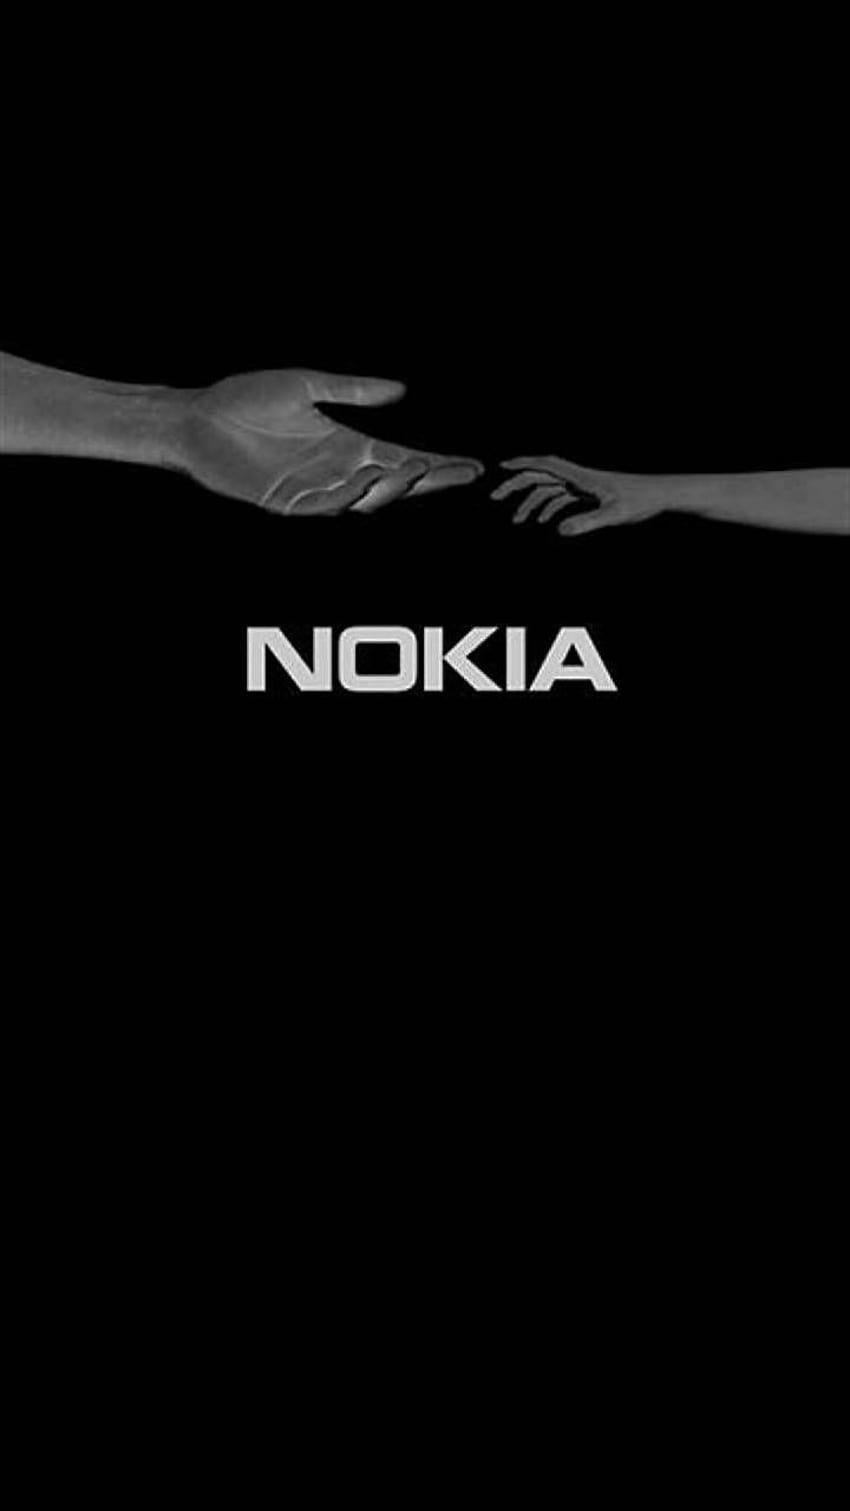 Nokia iPhone HD wallpapers mang đến sự kết hợp hoàn hảo giữa Nokia và iPhone. Bạn sẽ không thể ngừng ngắm nhìn những hình nền đẹp như mơ trên điện thoại của mình.